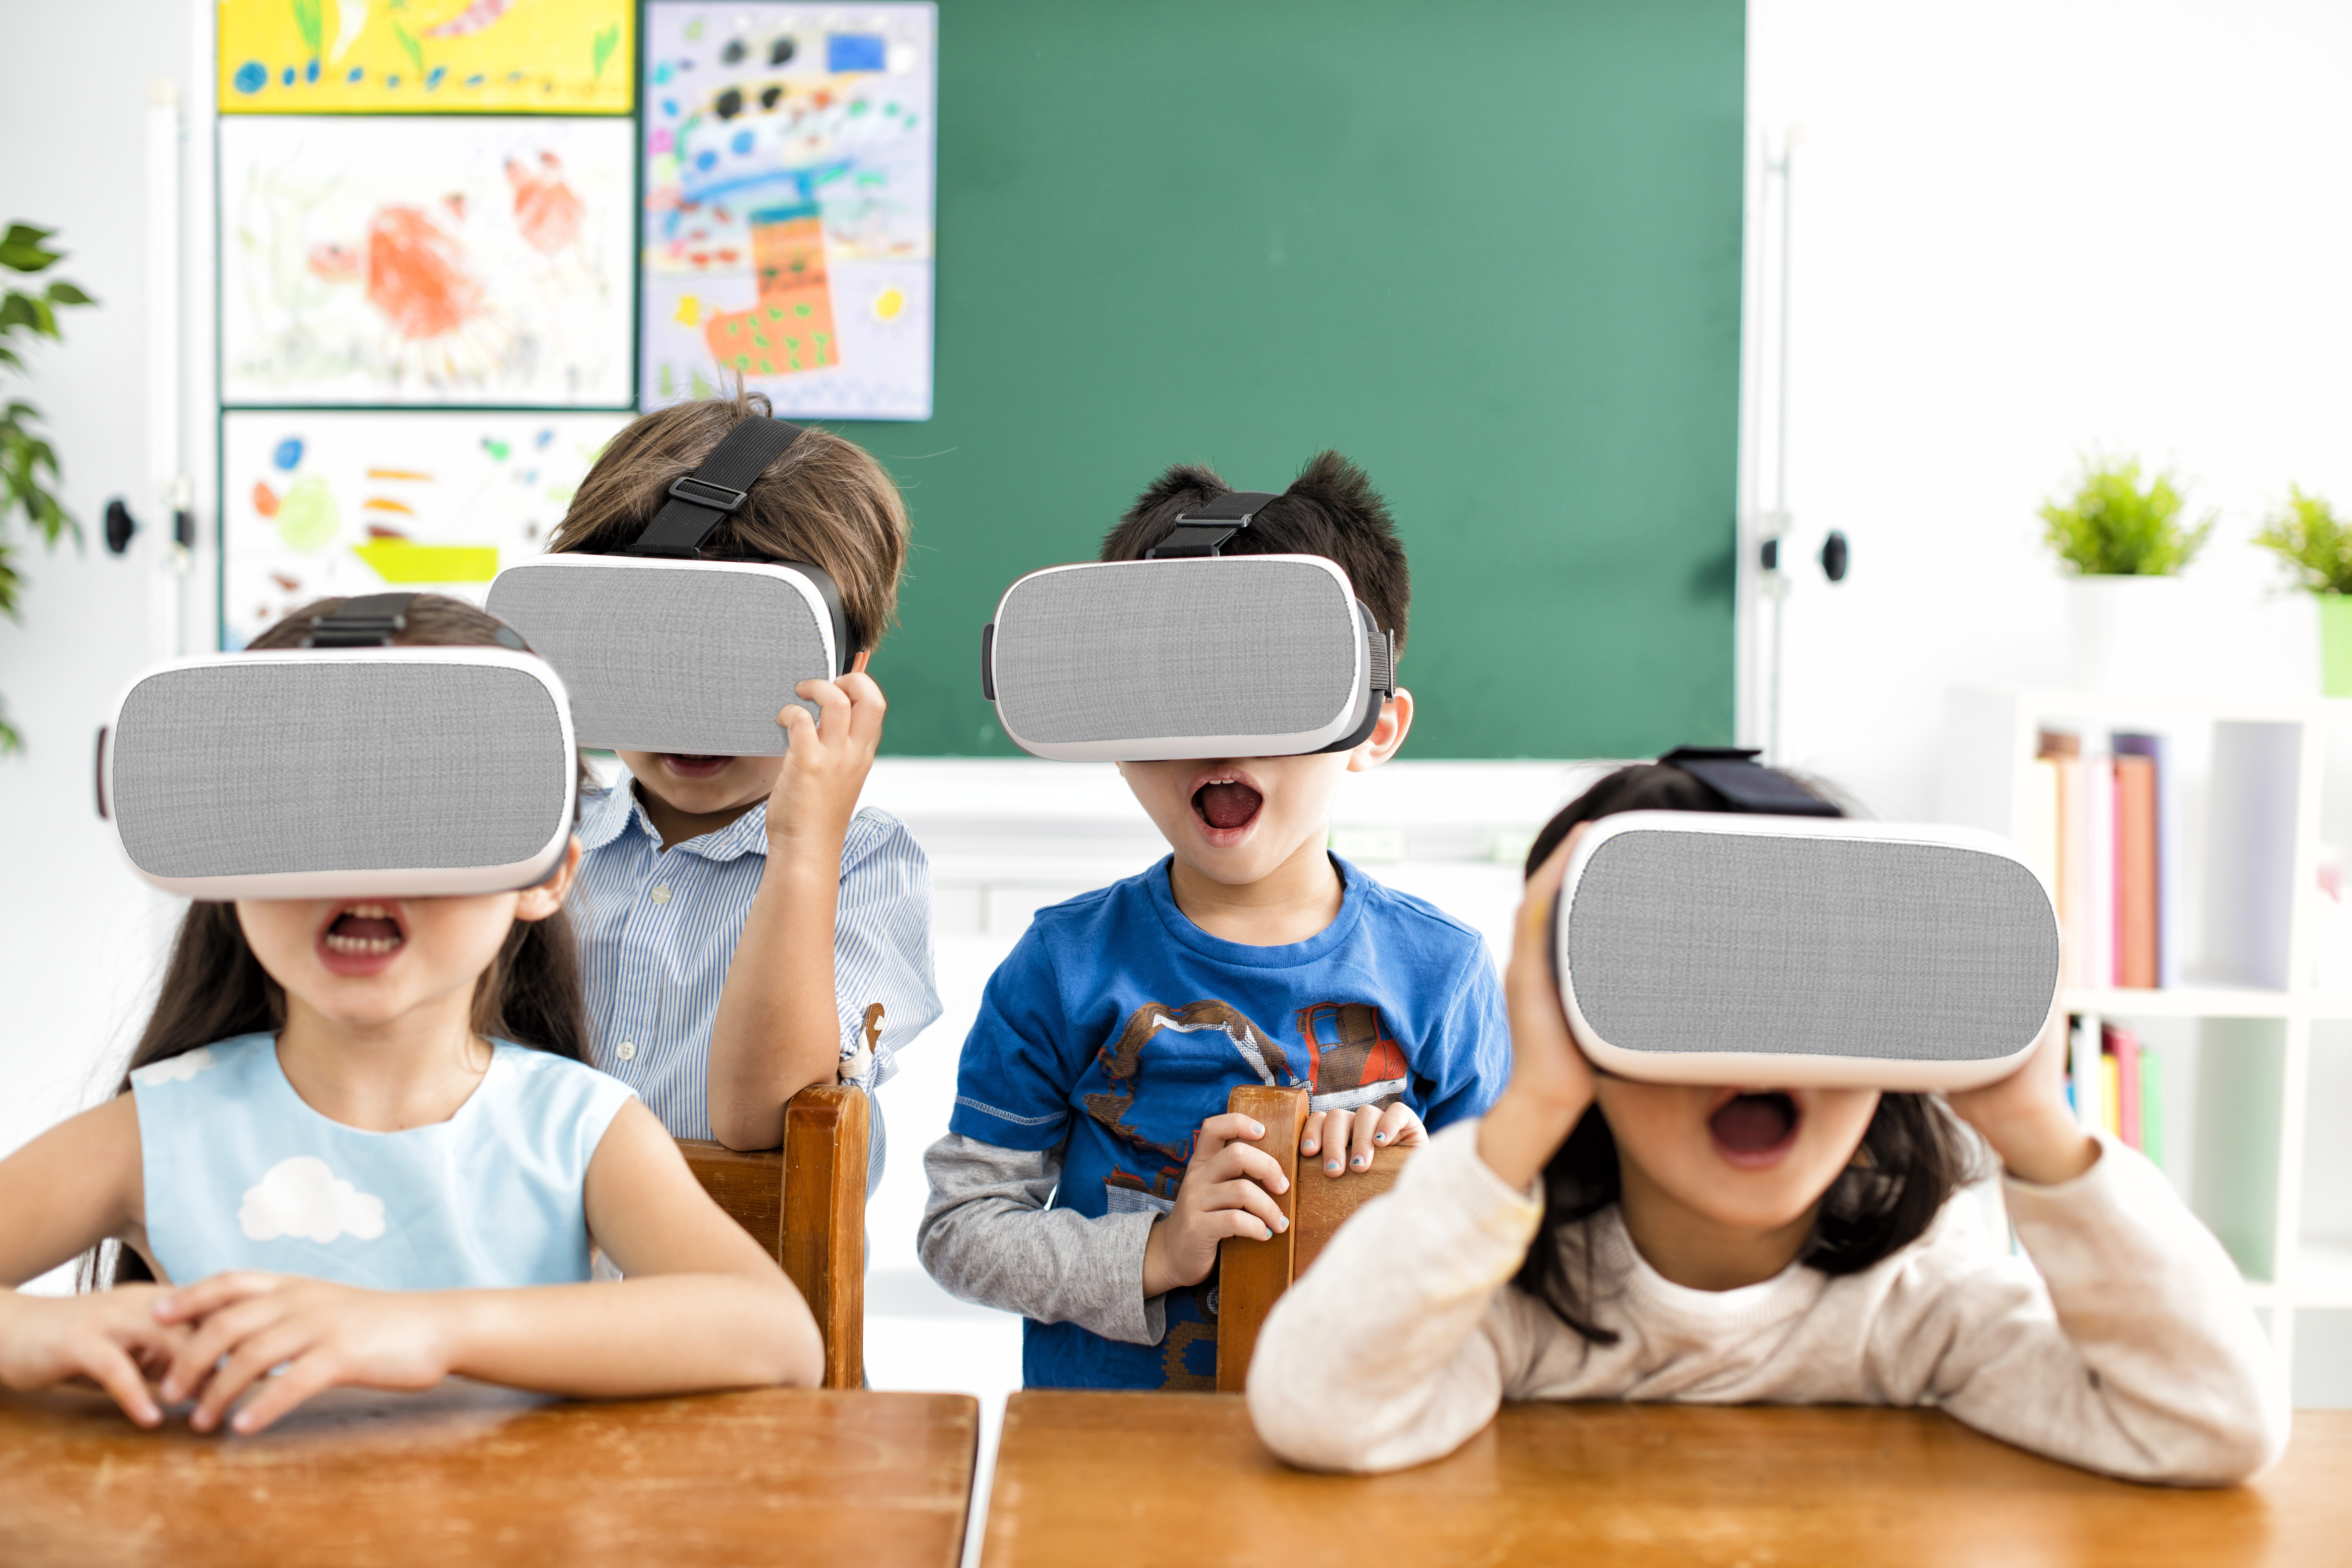 VR multiuser teaching system